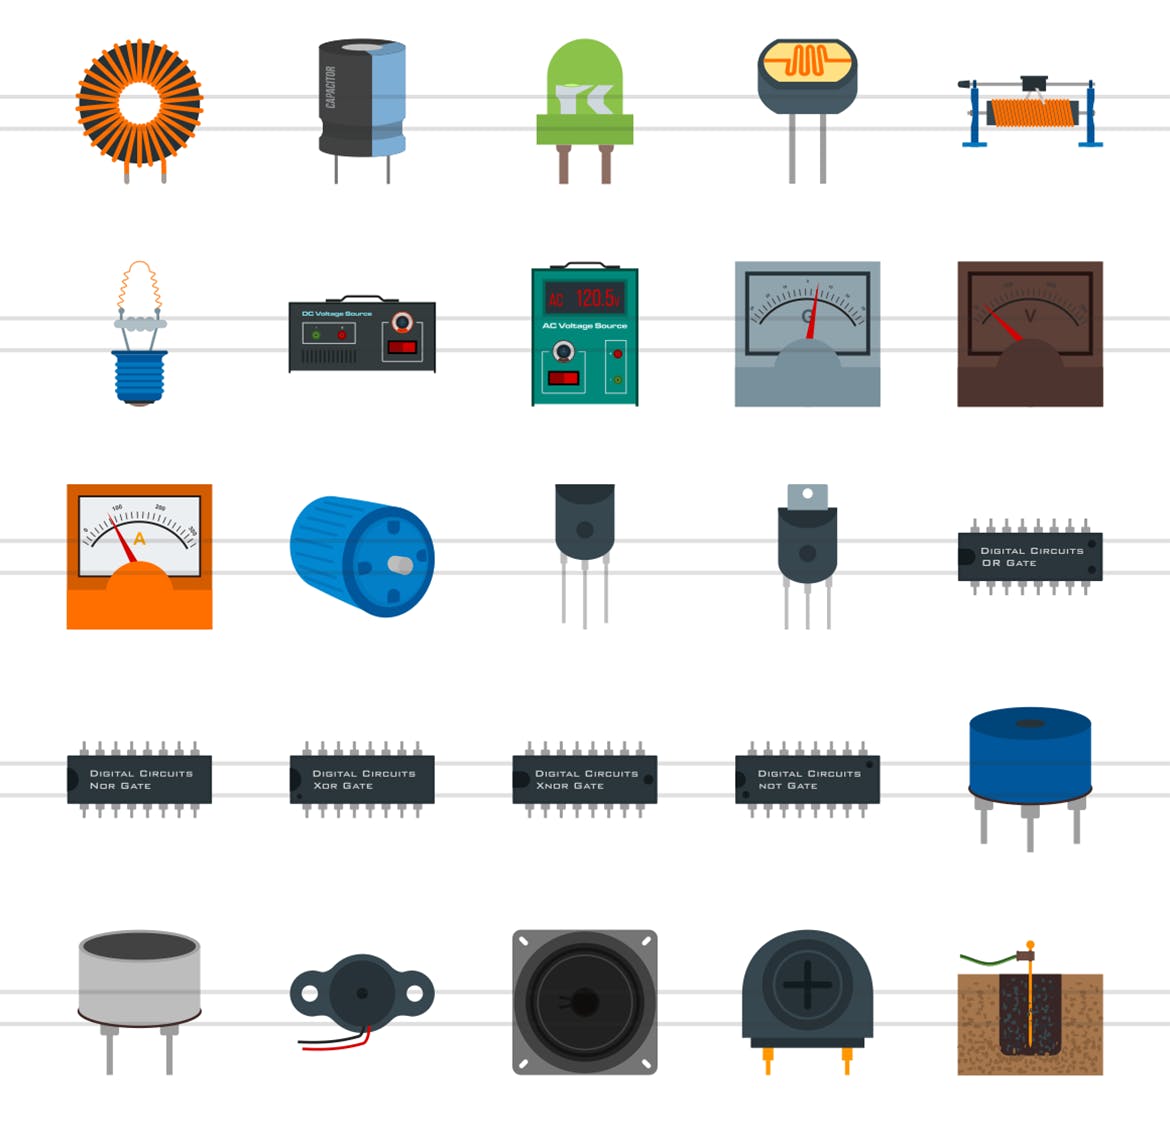 50枚电路线路板主题扁平化彩色矢量素材天下精选图标 50 Electric Circuits Flat Multicolor Icons插图(2)